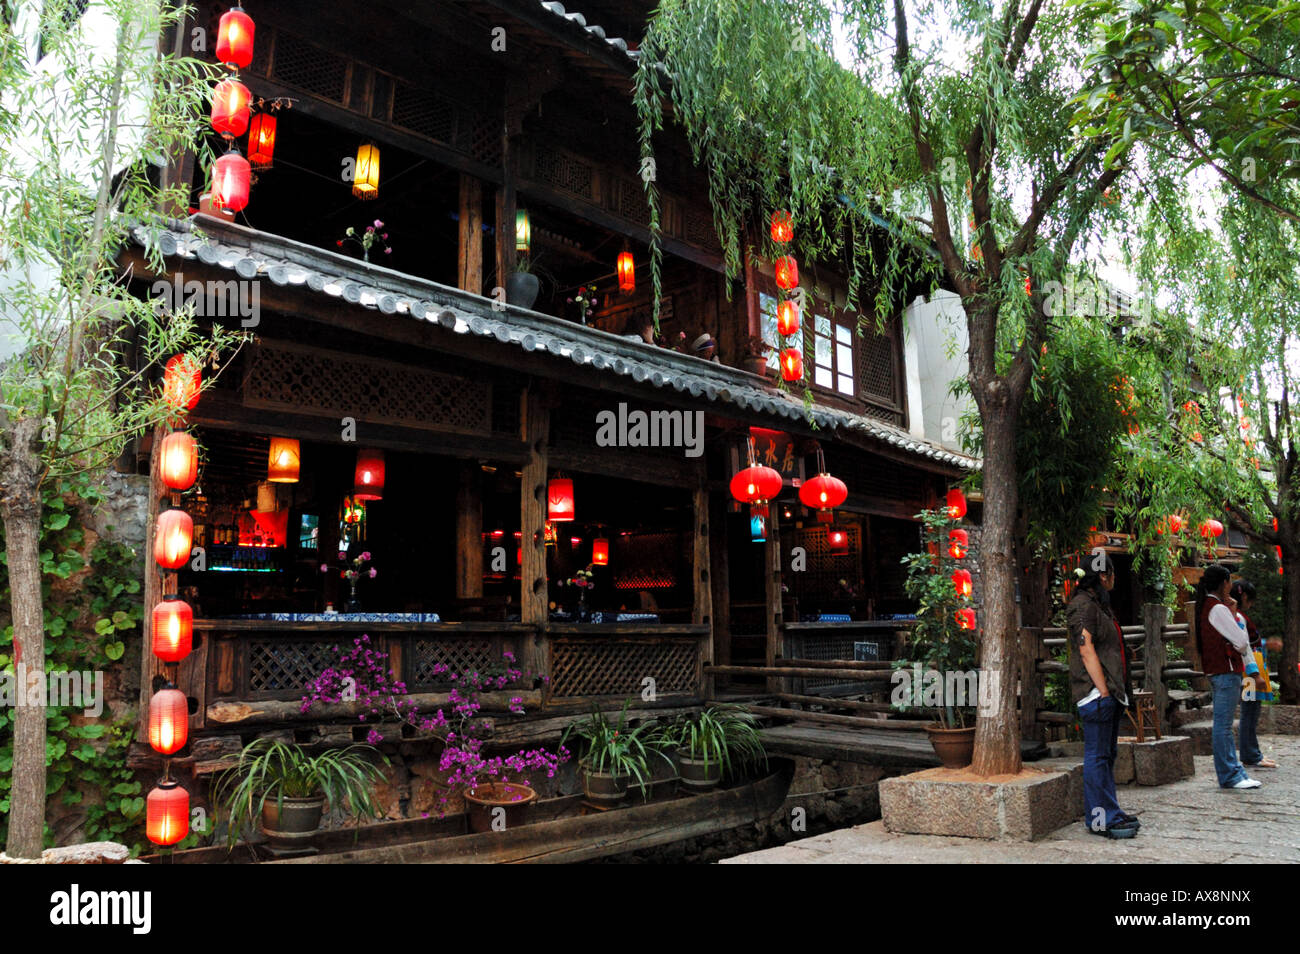 Lanterne rosse decorate un negozio di fronte a Lijiang old town, Yunnan in Cina. Foto Stock